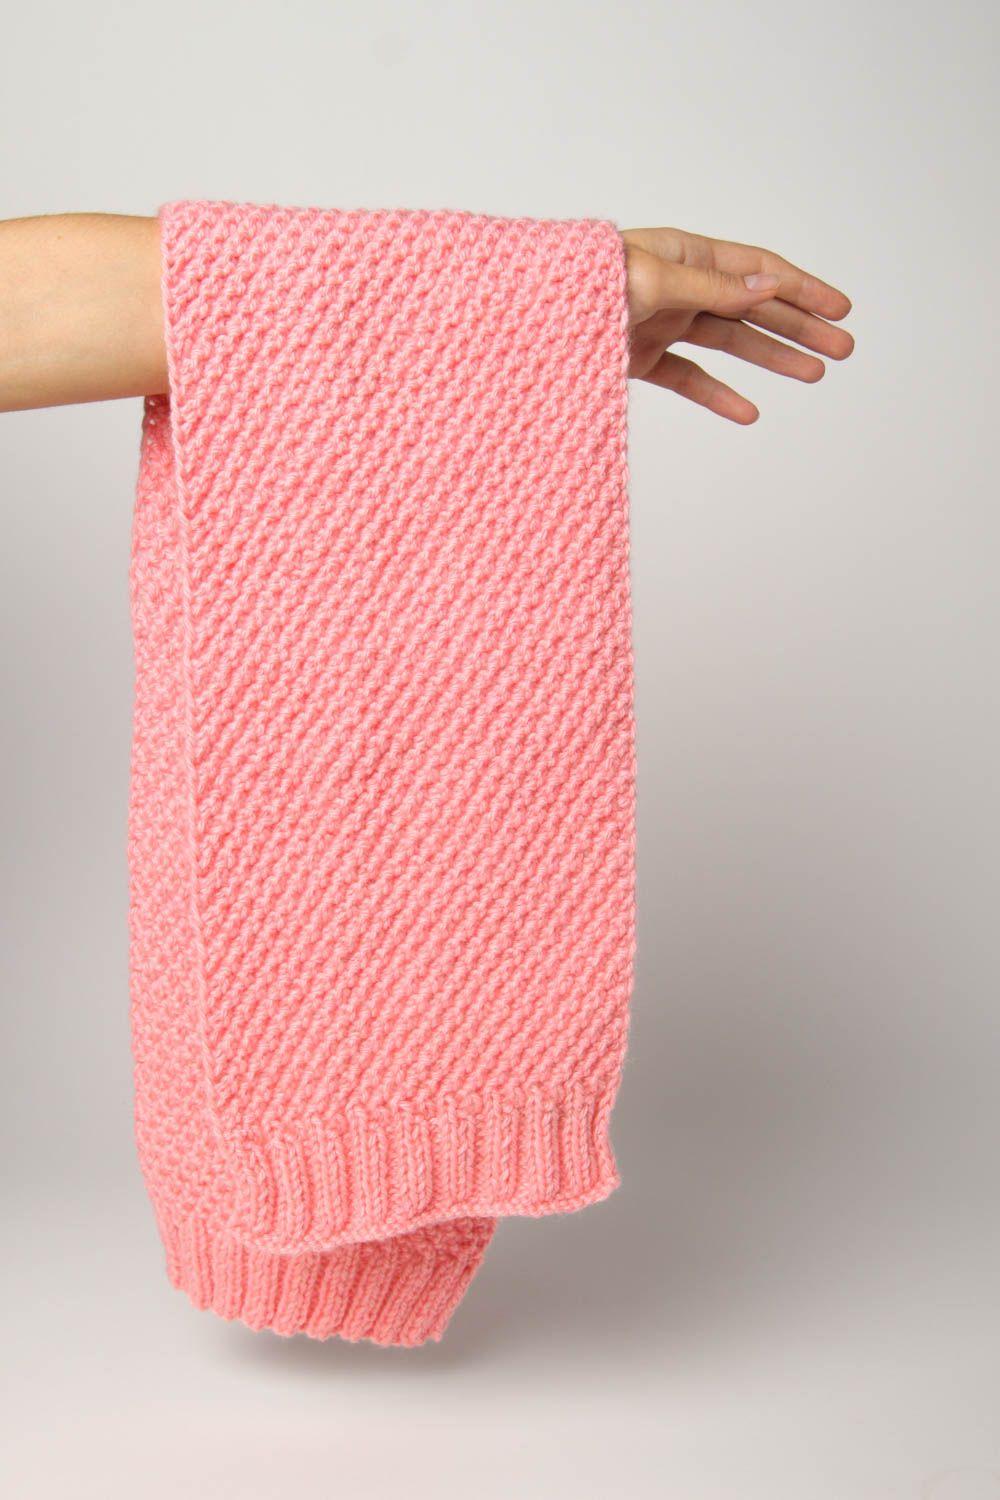 Шарф спицами розовый шарф ручной работы детский шарф из полушерсти красивый фото 3